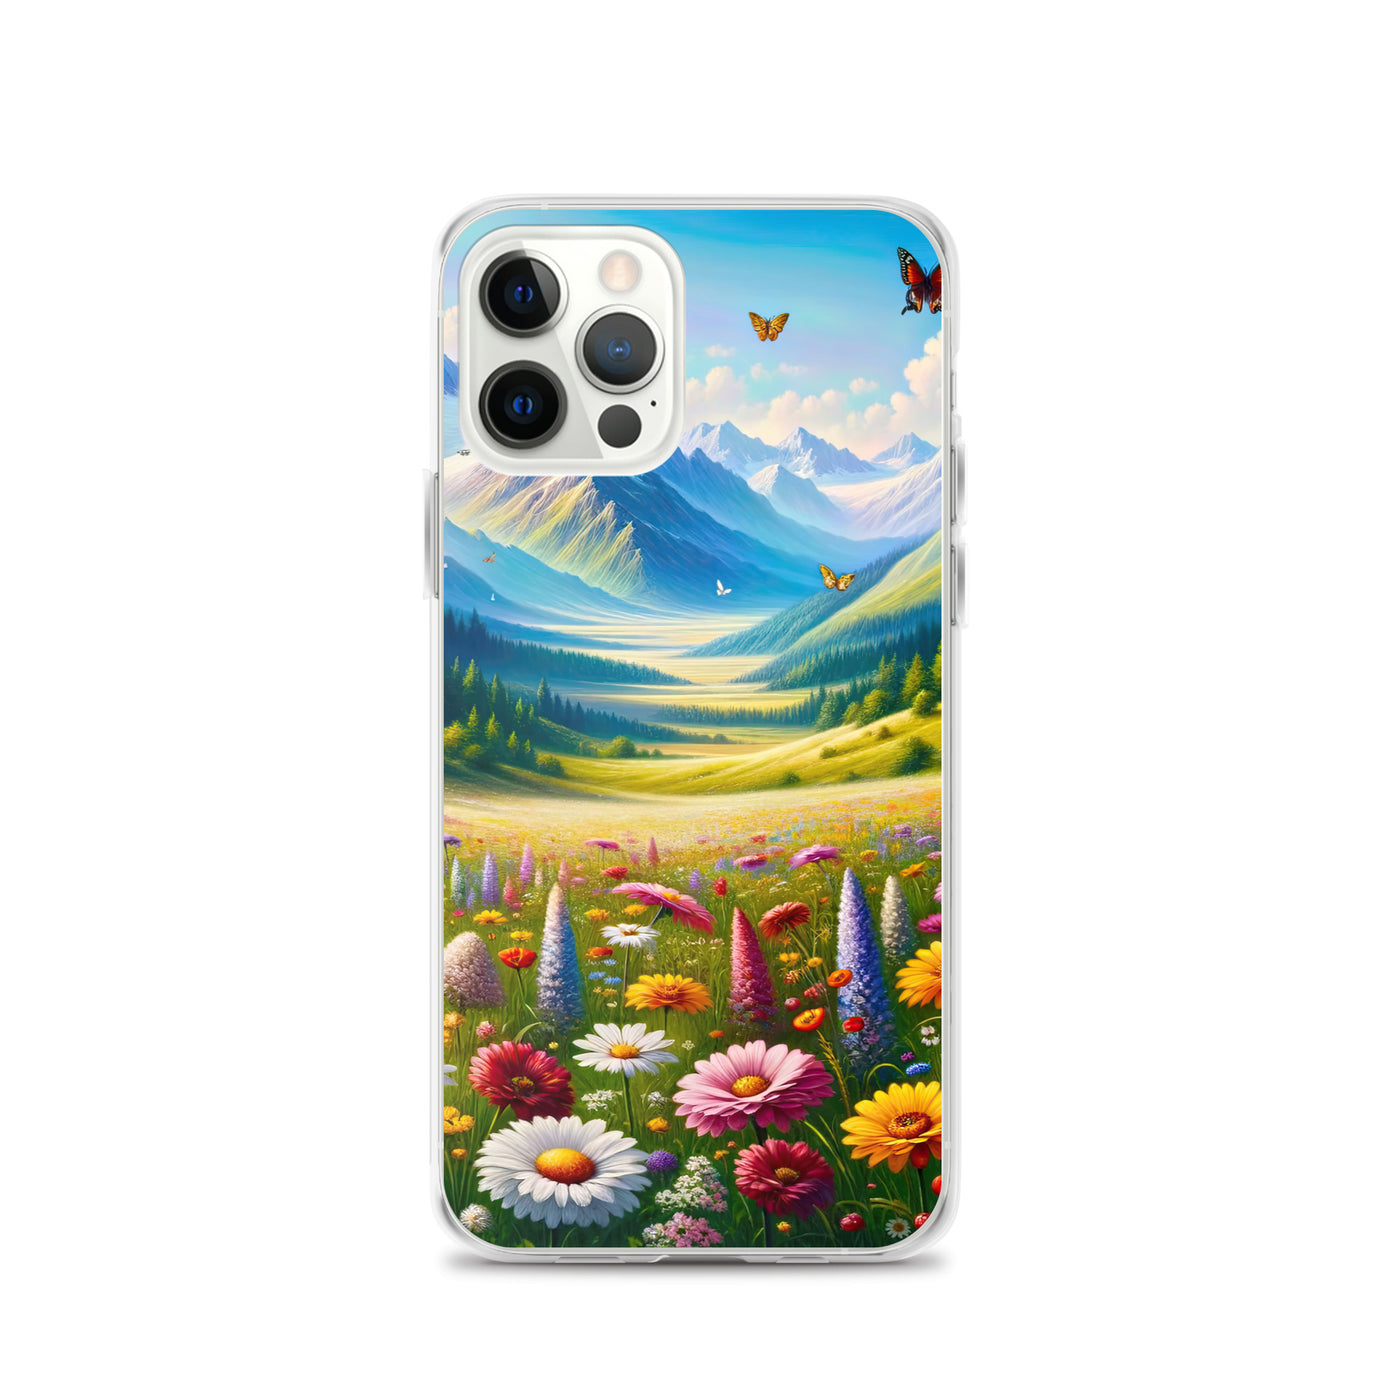 Ölgemälde einer ruhigen Almwiese, Oase mit bunter Wildblumenpracht - iPhone Schutzhülle (durchsichtig) camping xxx yyy zzz iPhone 12 Pro